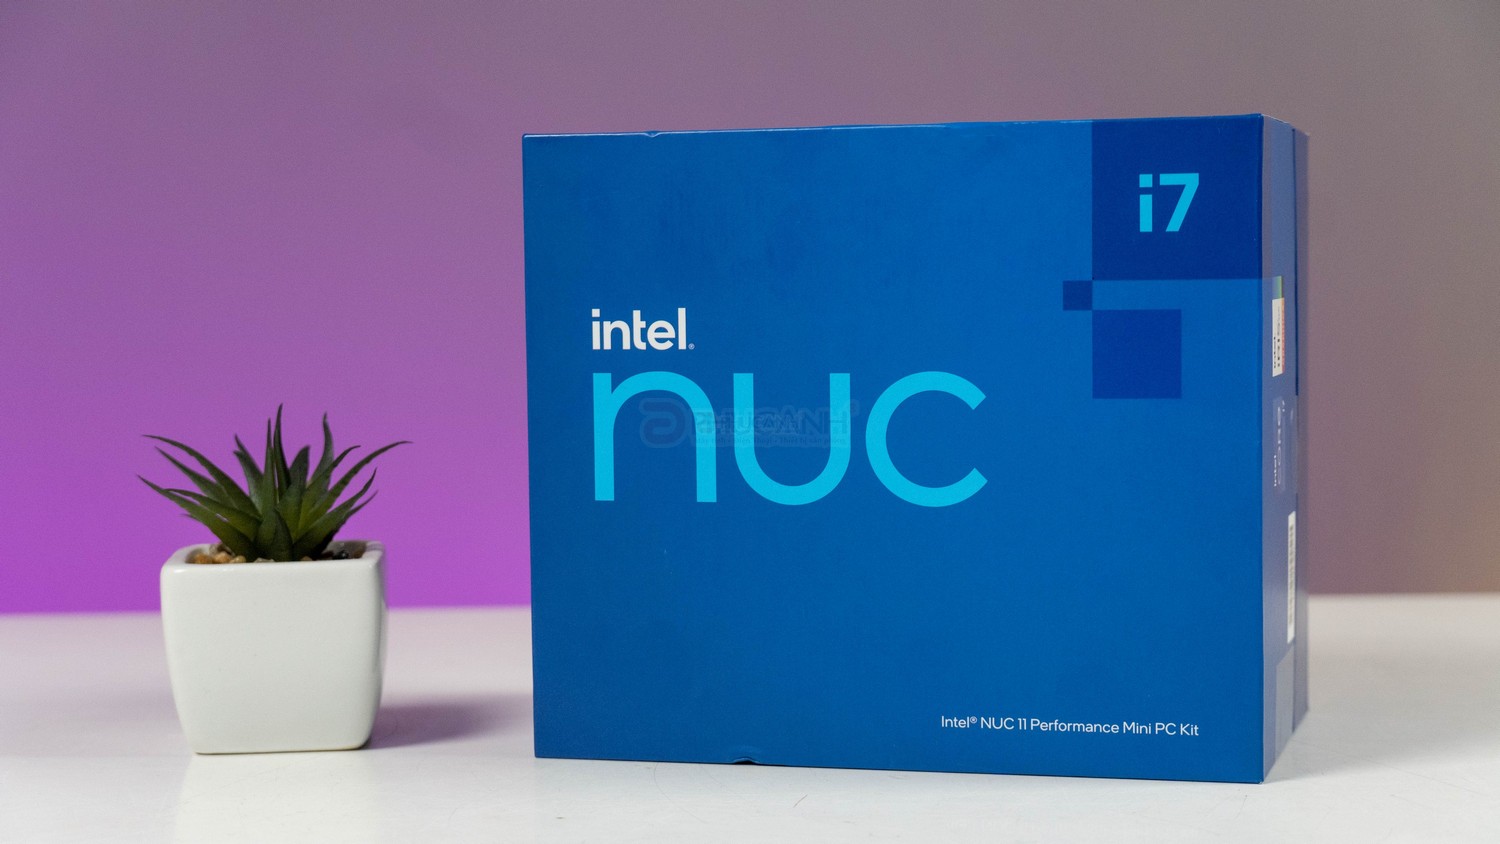 Đánh giá Intel NUC L6 RNUC11PAHI70000 - Ẩn chứa sức mạnh từ CPU Core i7 trong không gian siêu nhỏ gọn